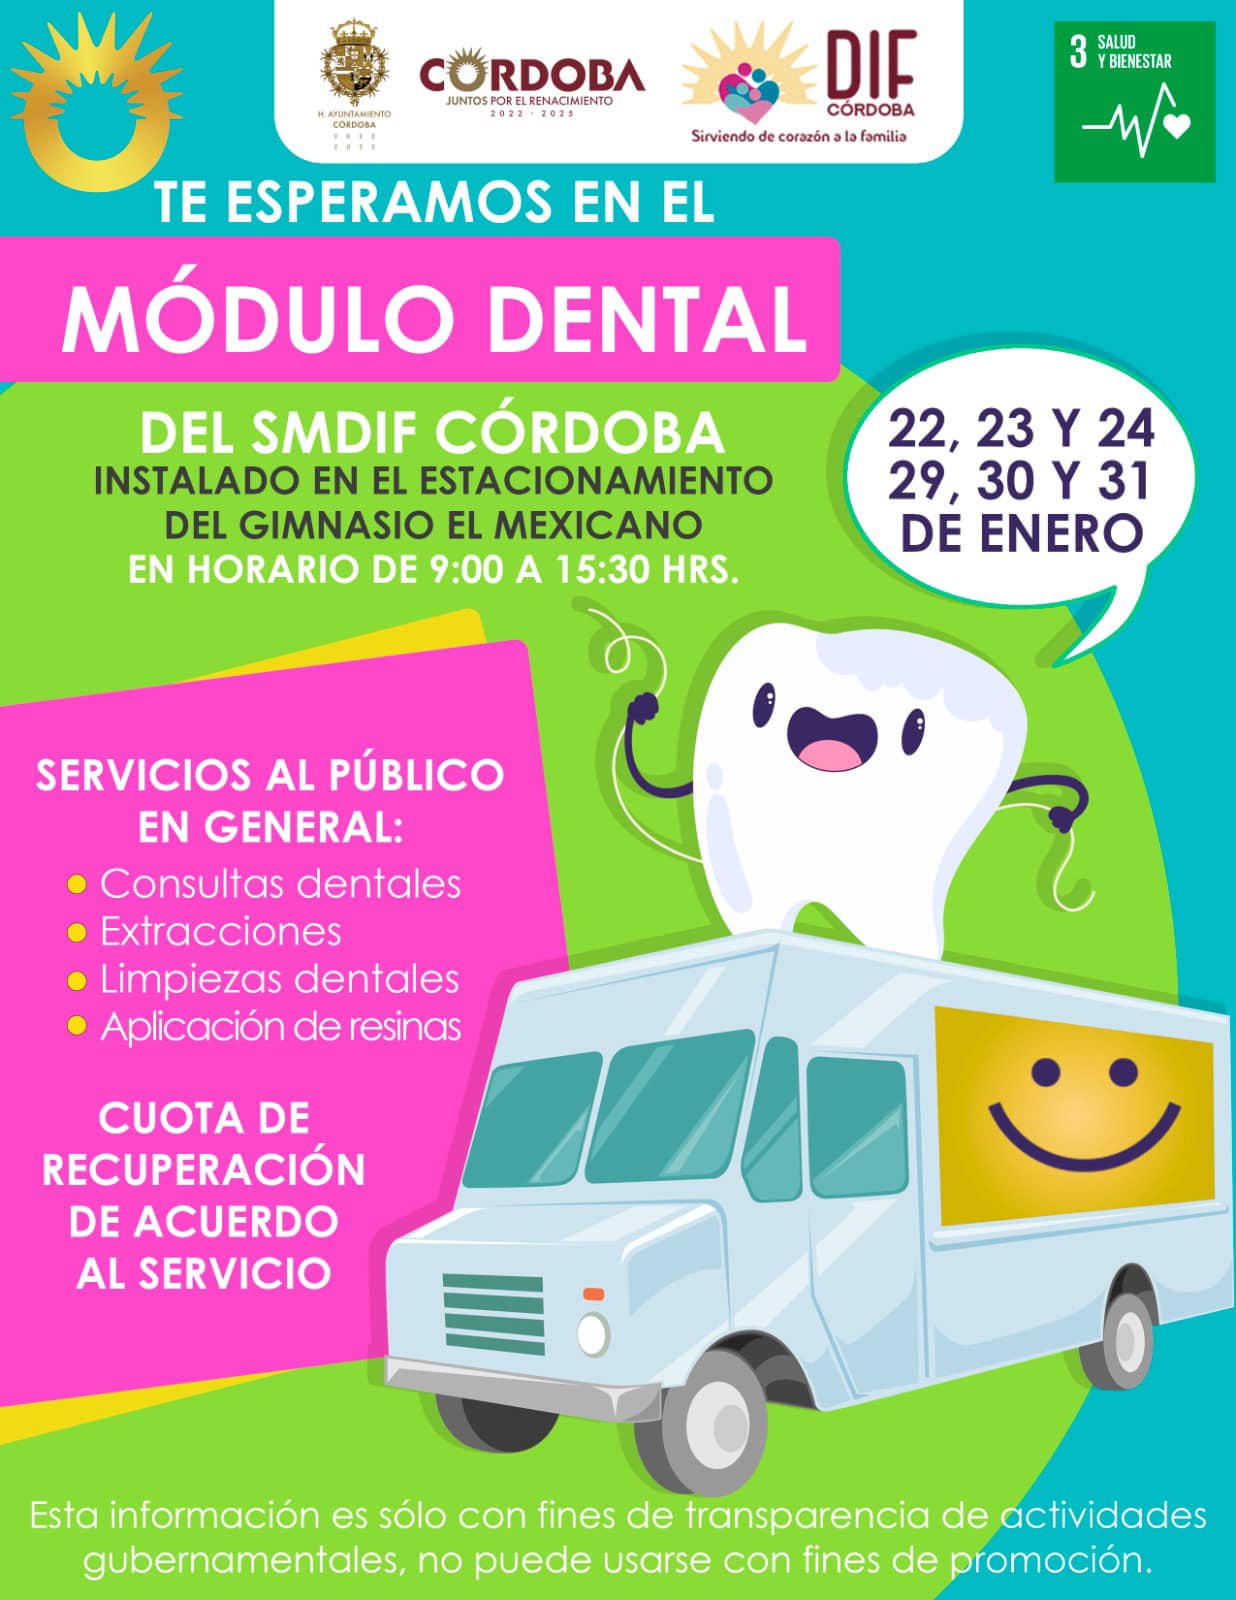 La Unidad Médico Dental se encontrará en el estacionamiento del Gimnasio El Mexicano